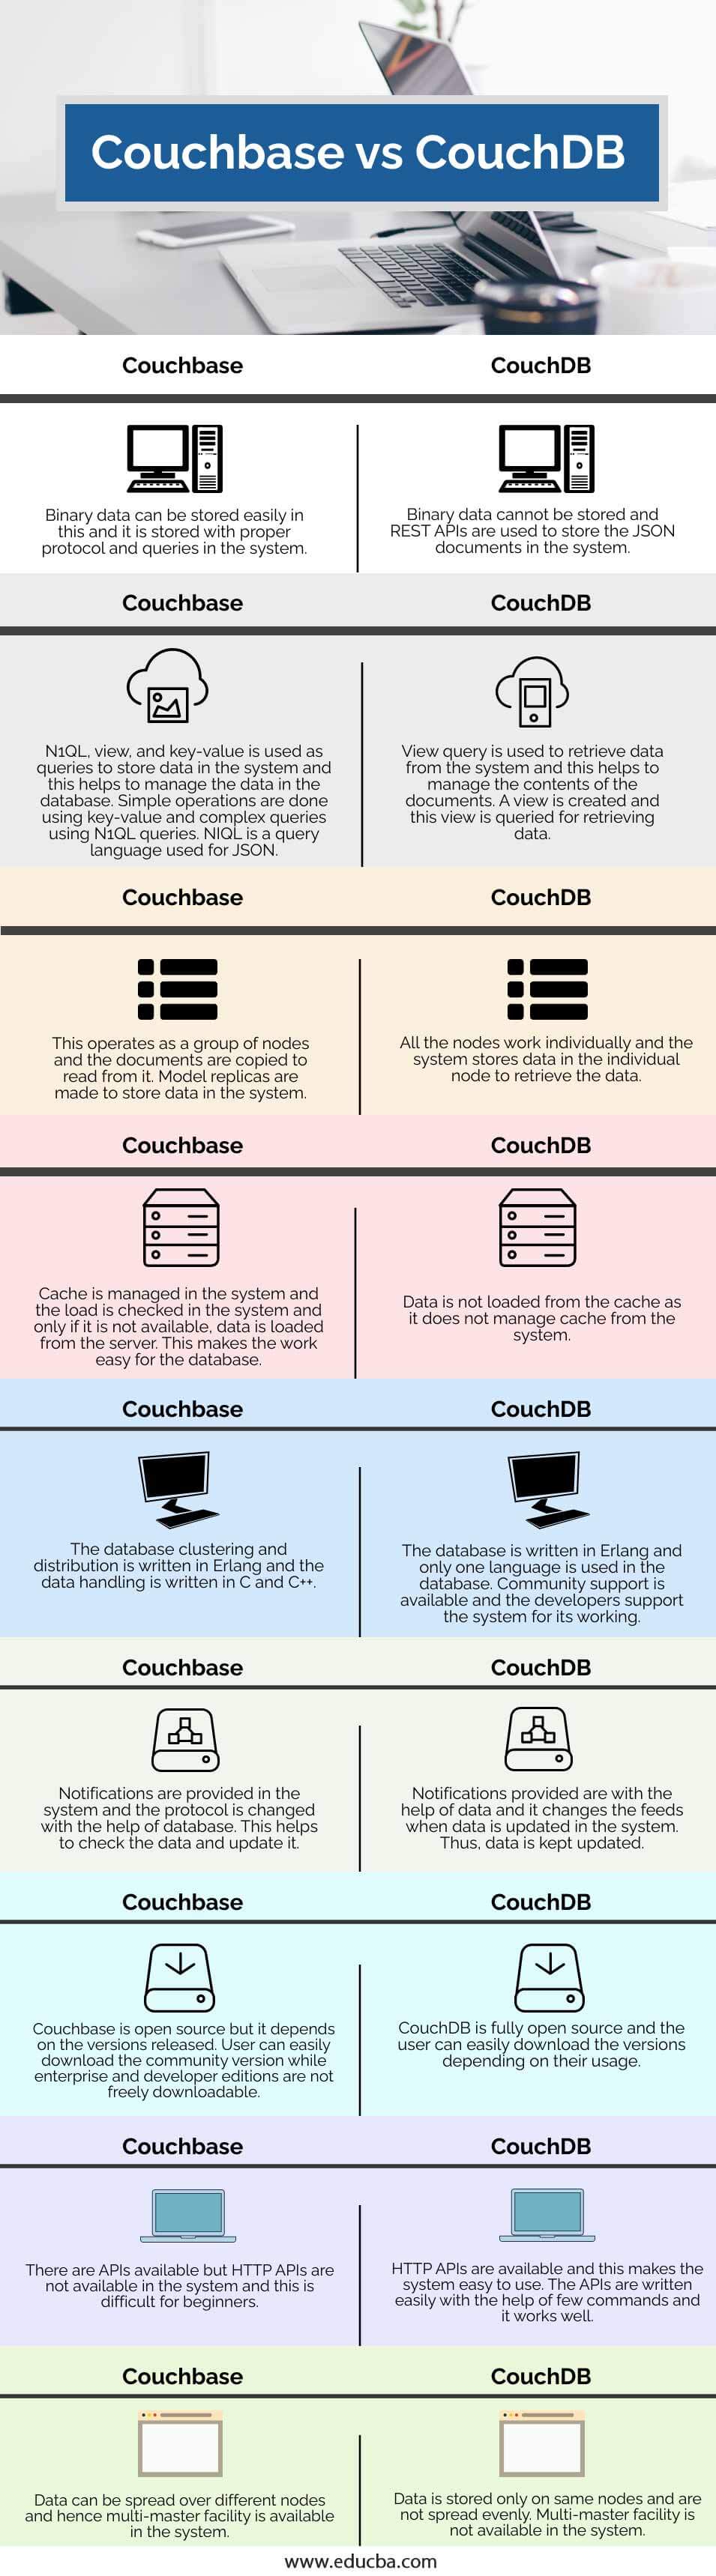 Couchbase-vs-CouchDB-info